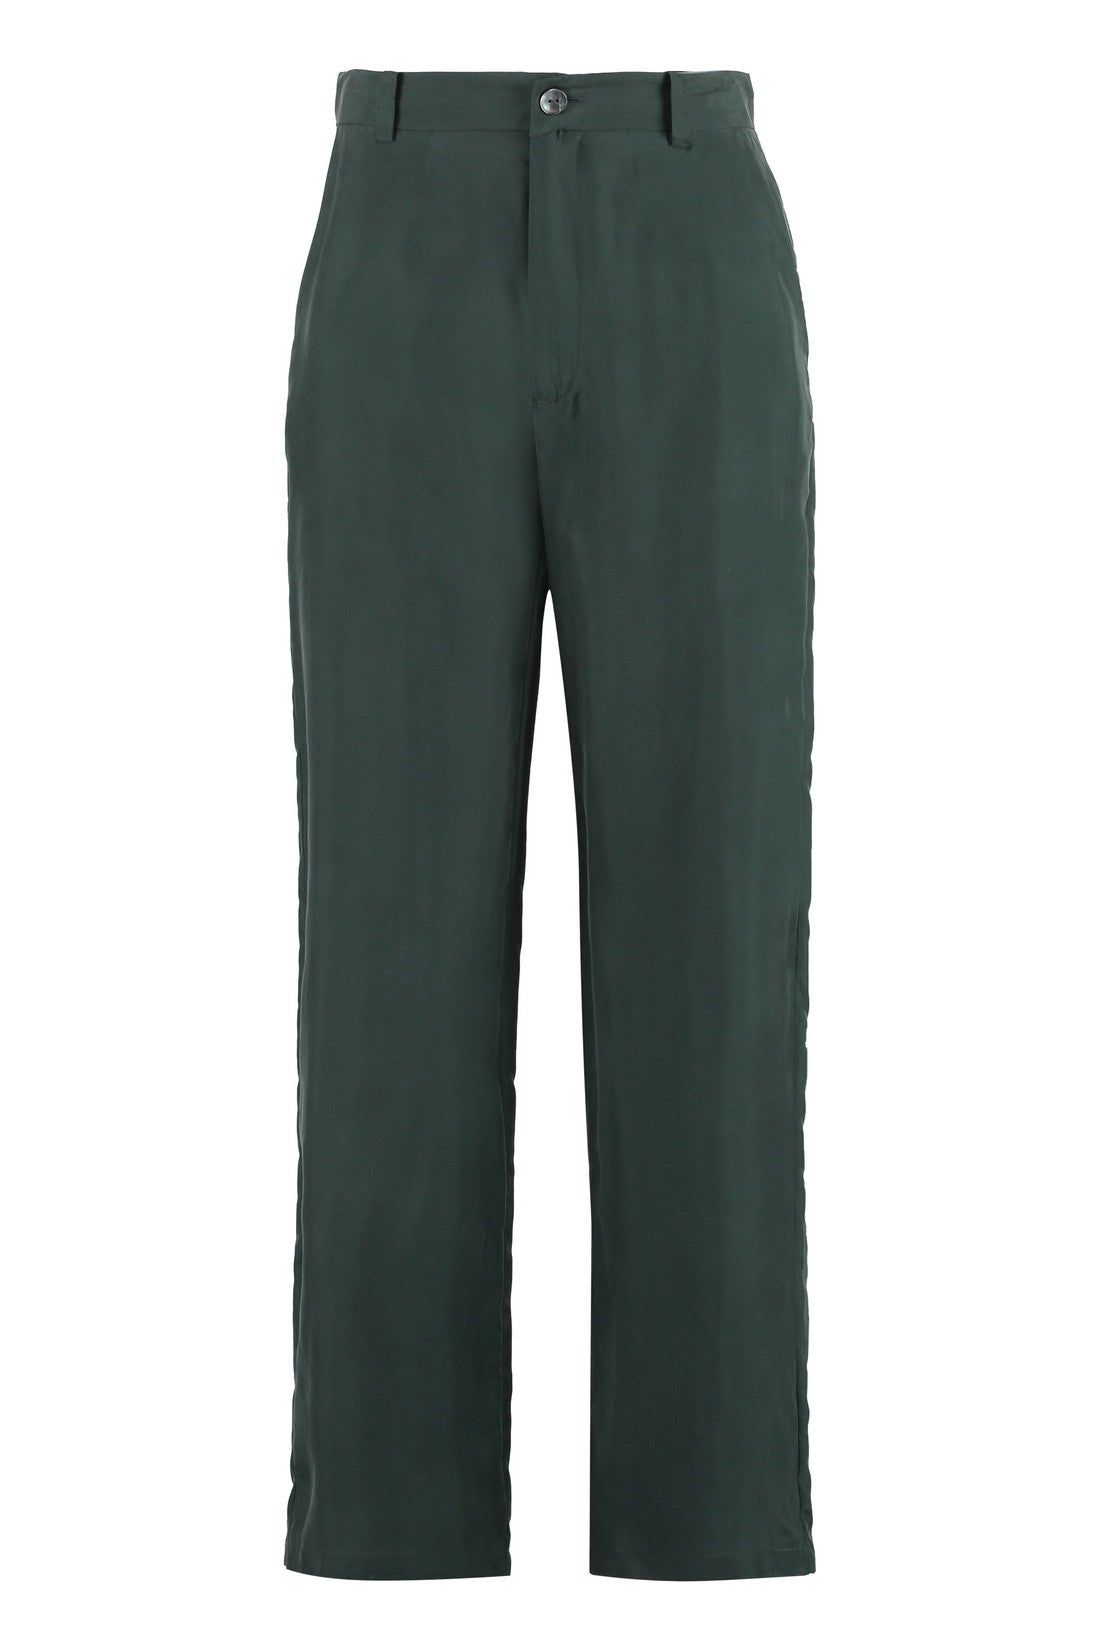 Parosh-OUTLET-SALE-Silk trousers-ARCHIVIST